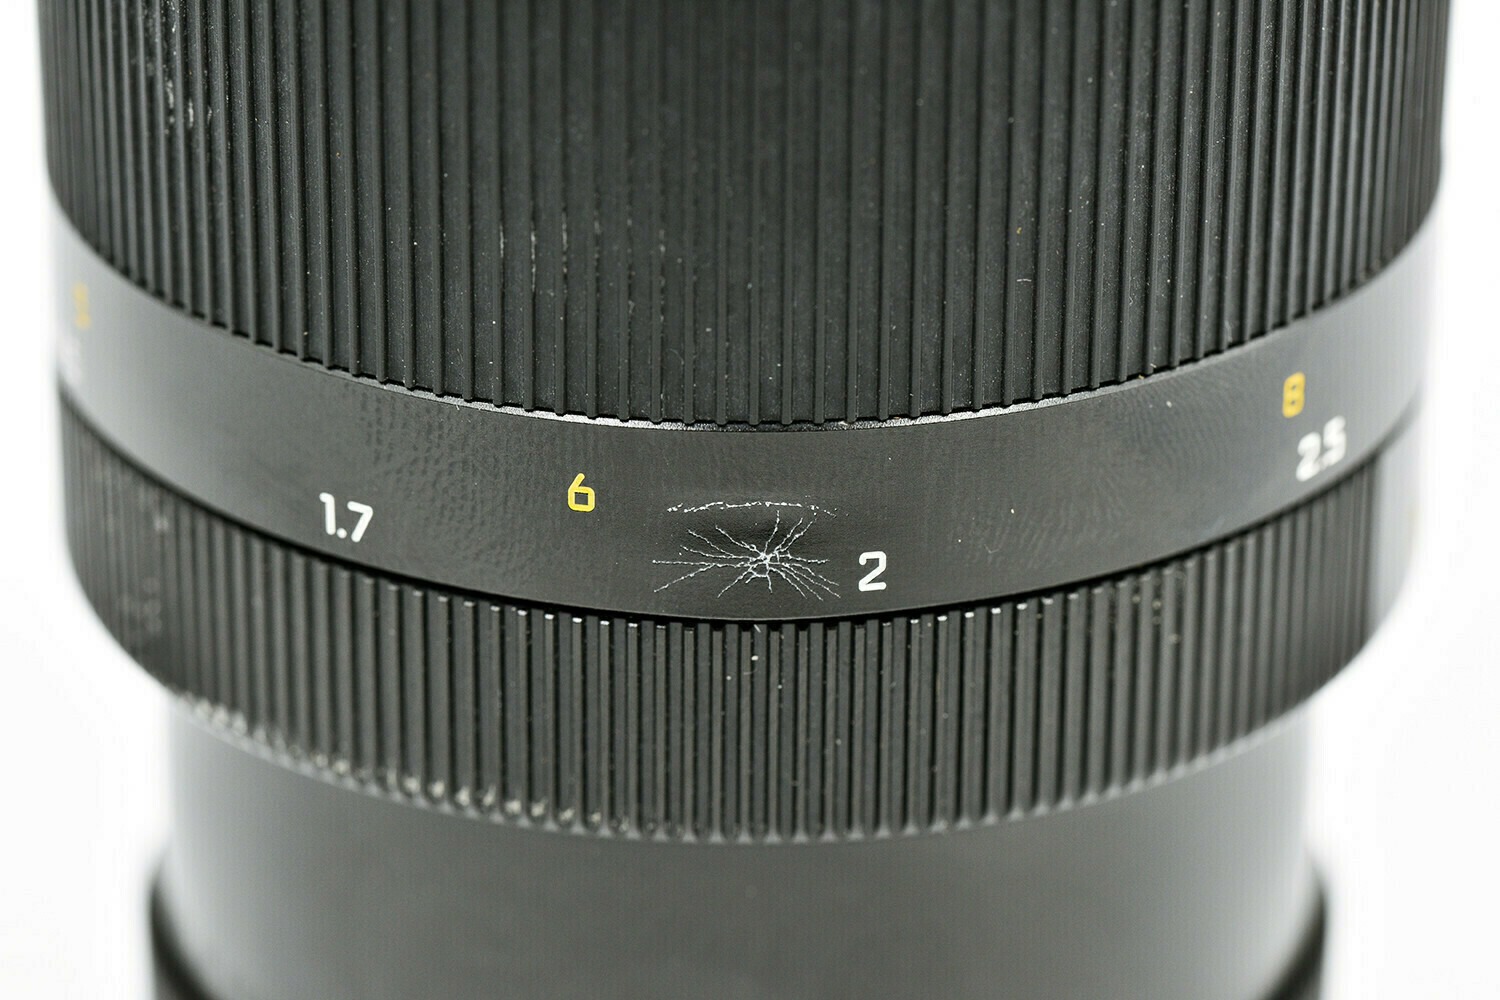 Leica Objectif R Elmarit 180 mm f/2.8 - 31394 2